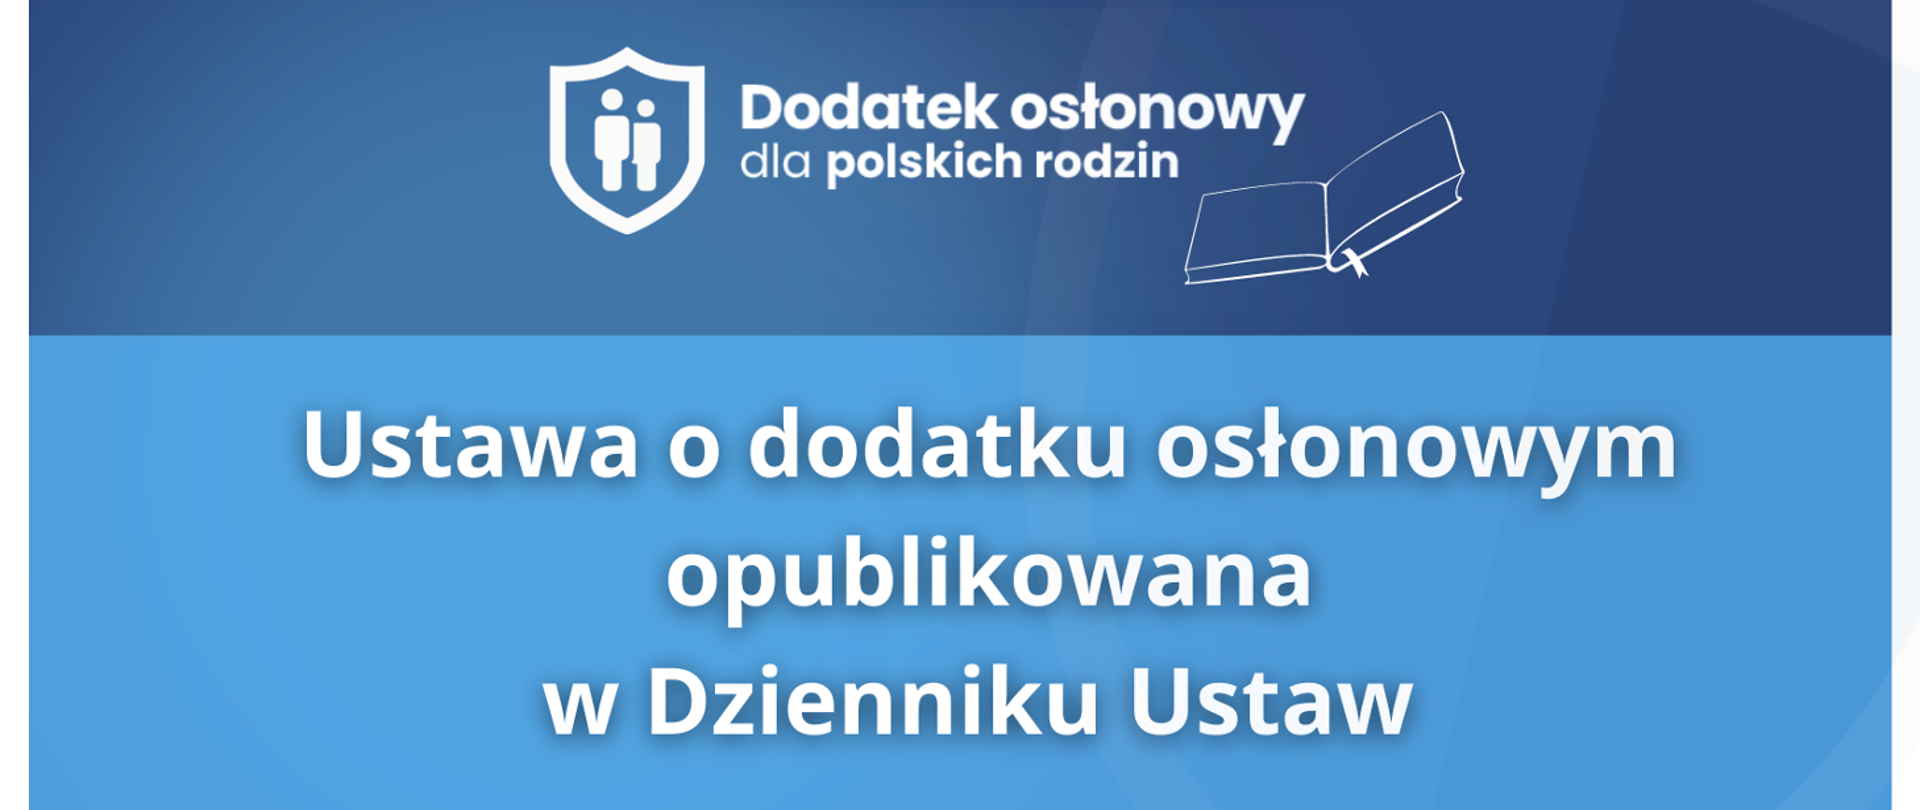 Rysunek tarczy na której są dwie figury ludzi, obok napis Dodatek osłonowy dla polskich rodzin. Ustawa o dodatku osłonowym opublikowana w Dzienniku Ustaw